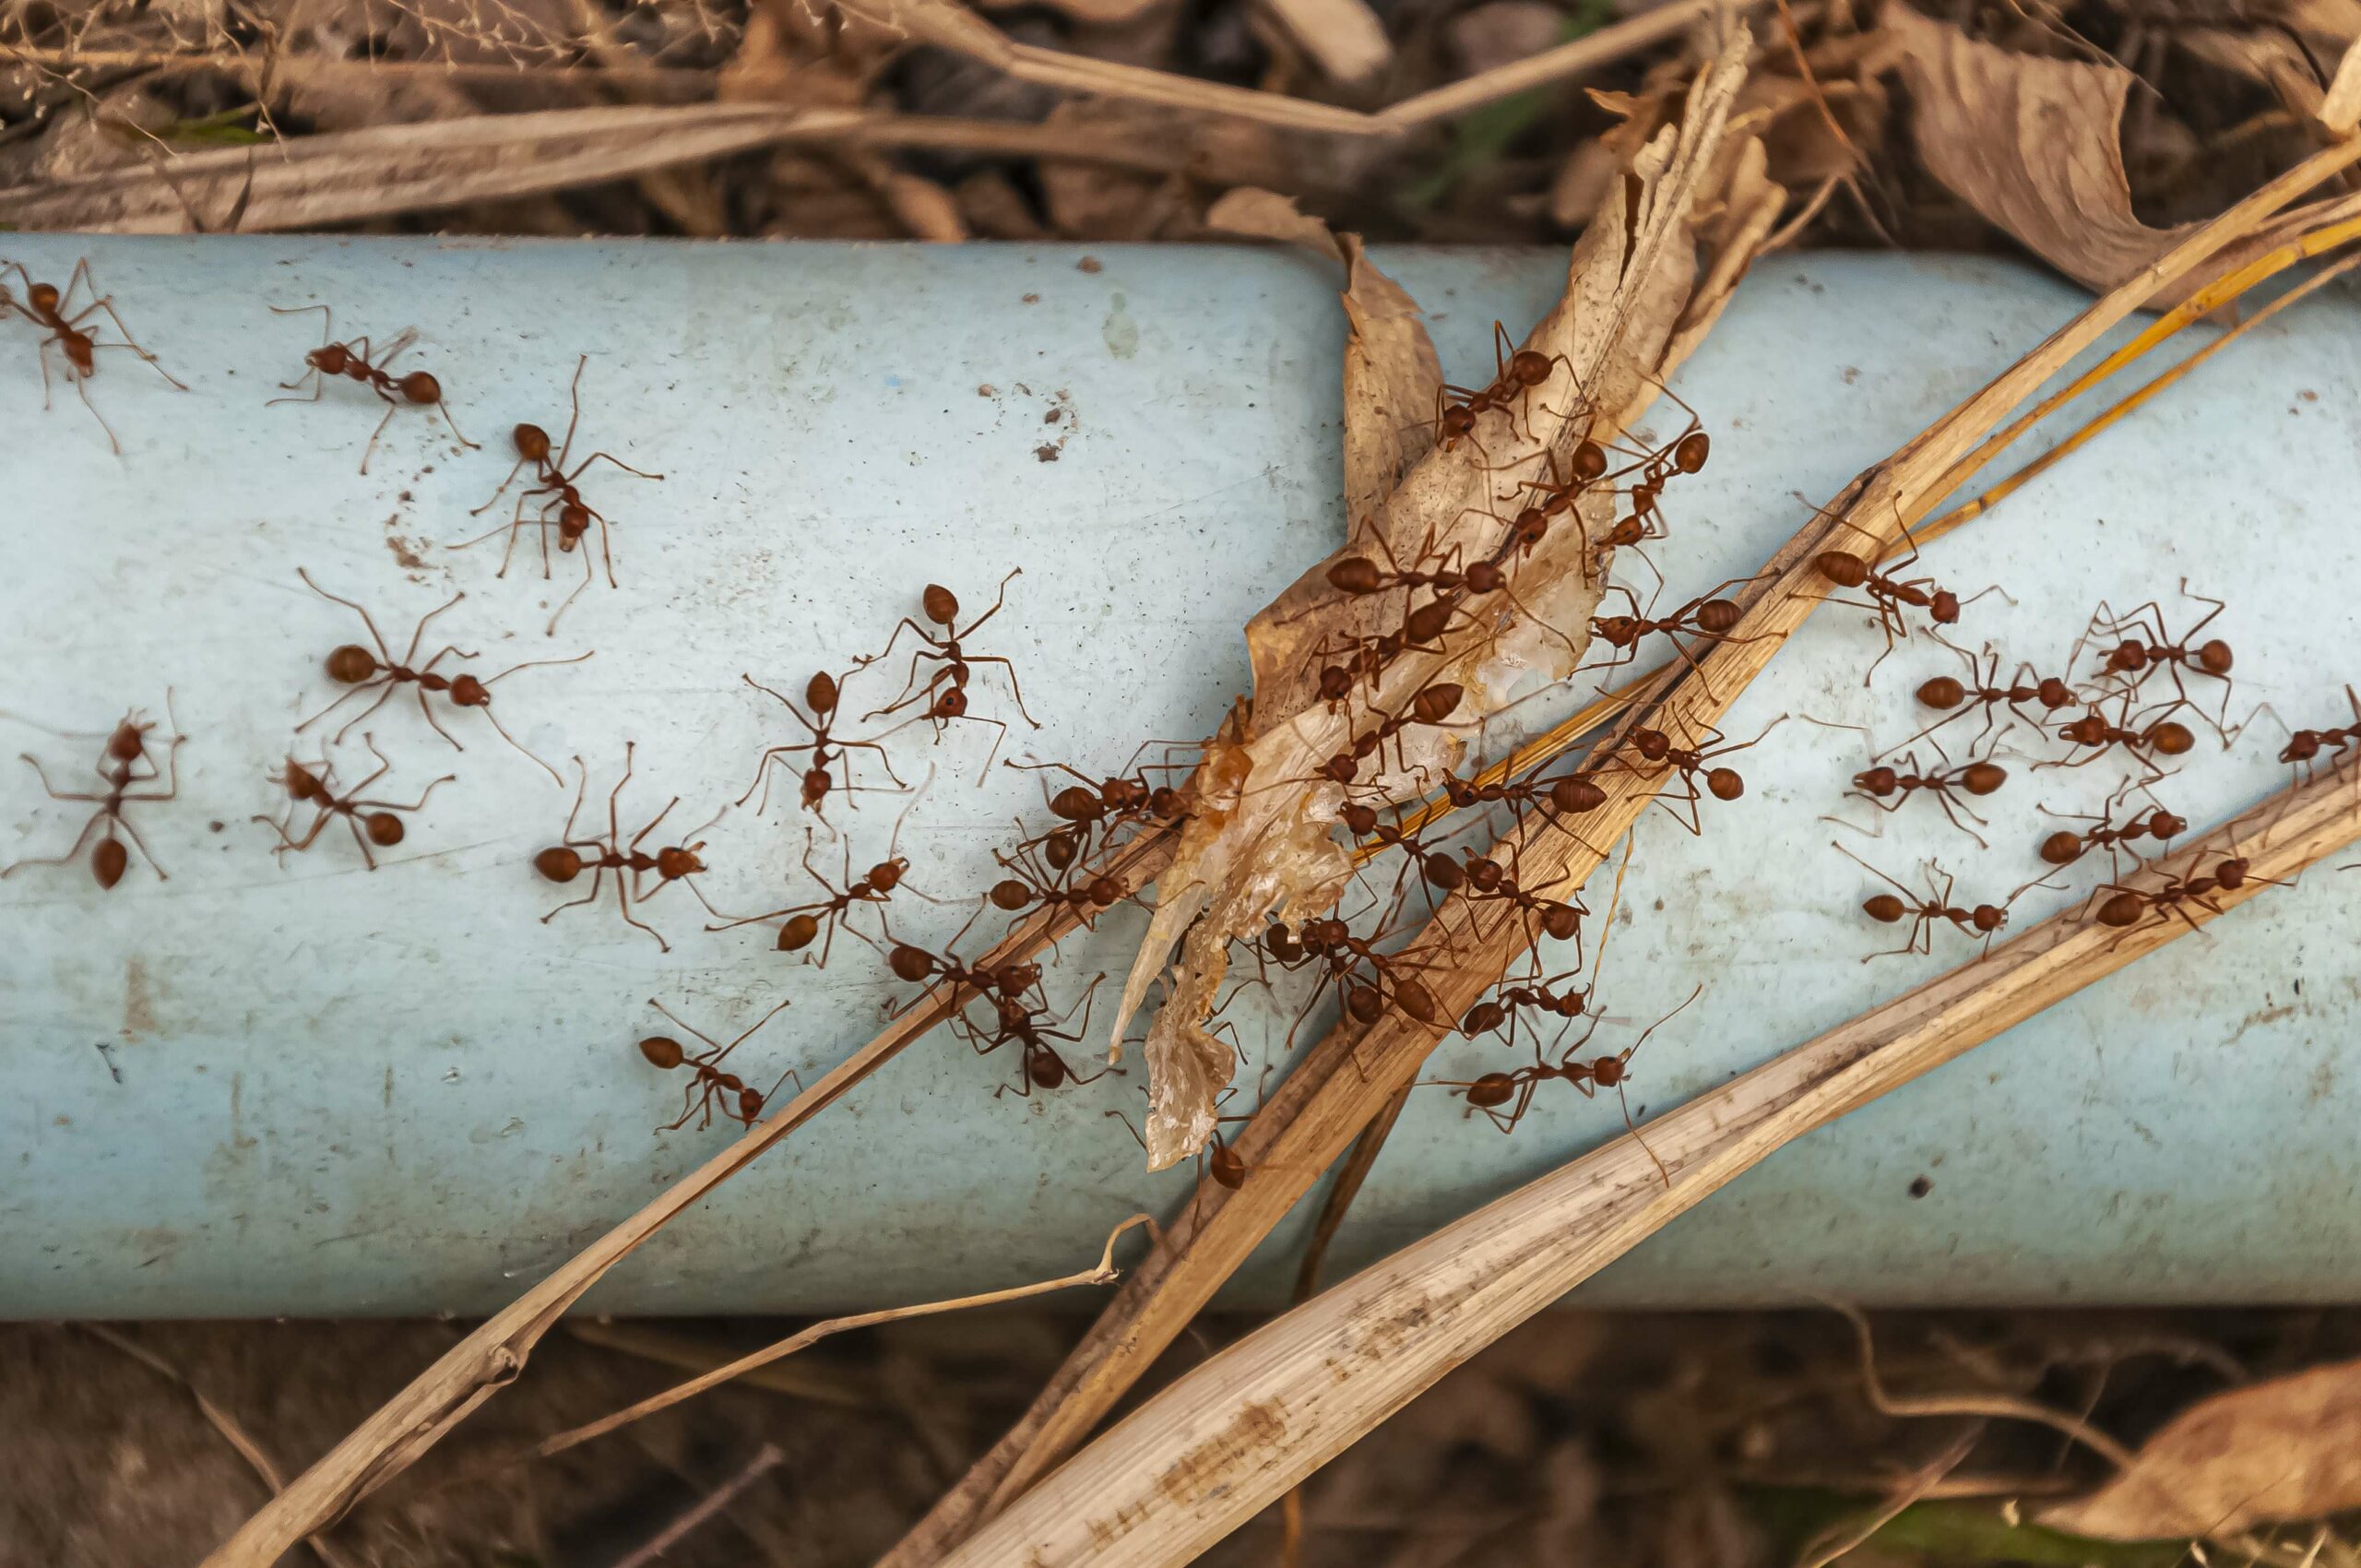 Des fourmis rouge dans leur environnement naturel